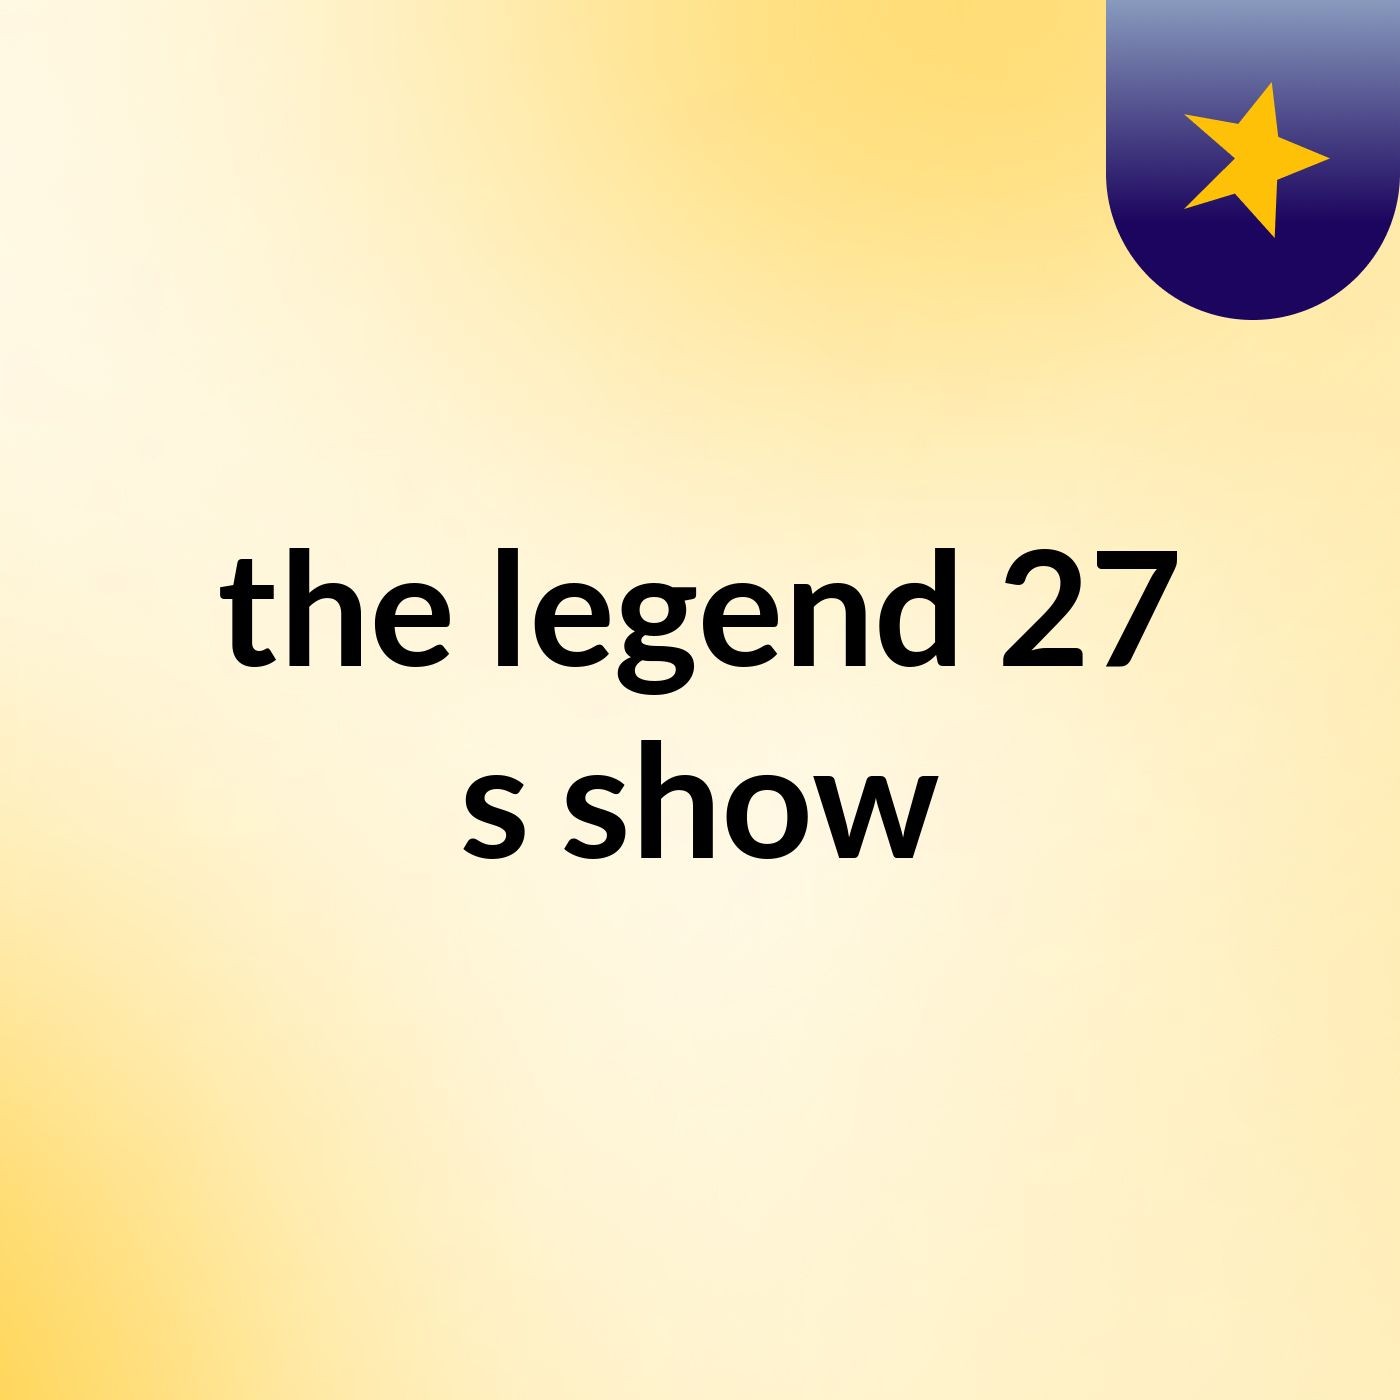 the legend 27's show